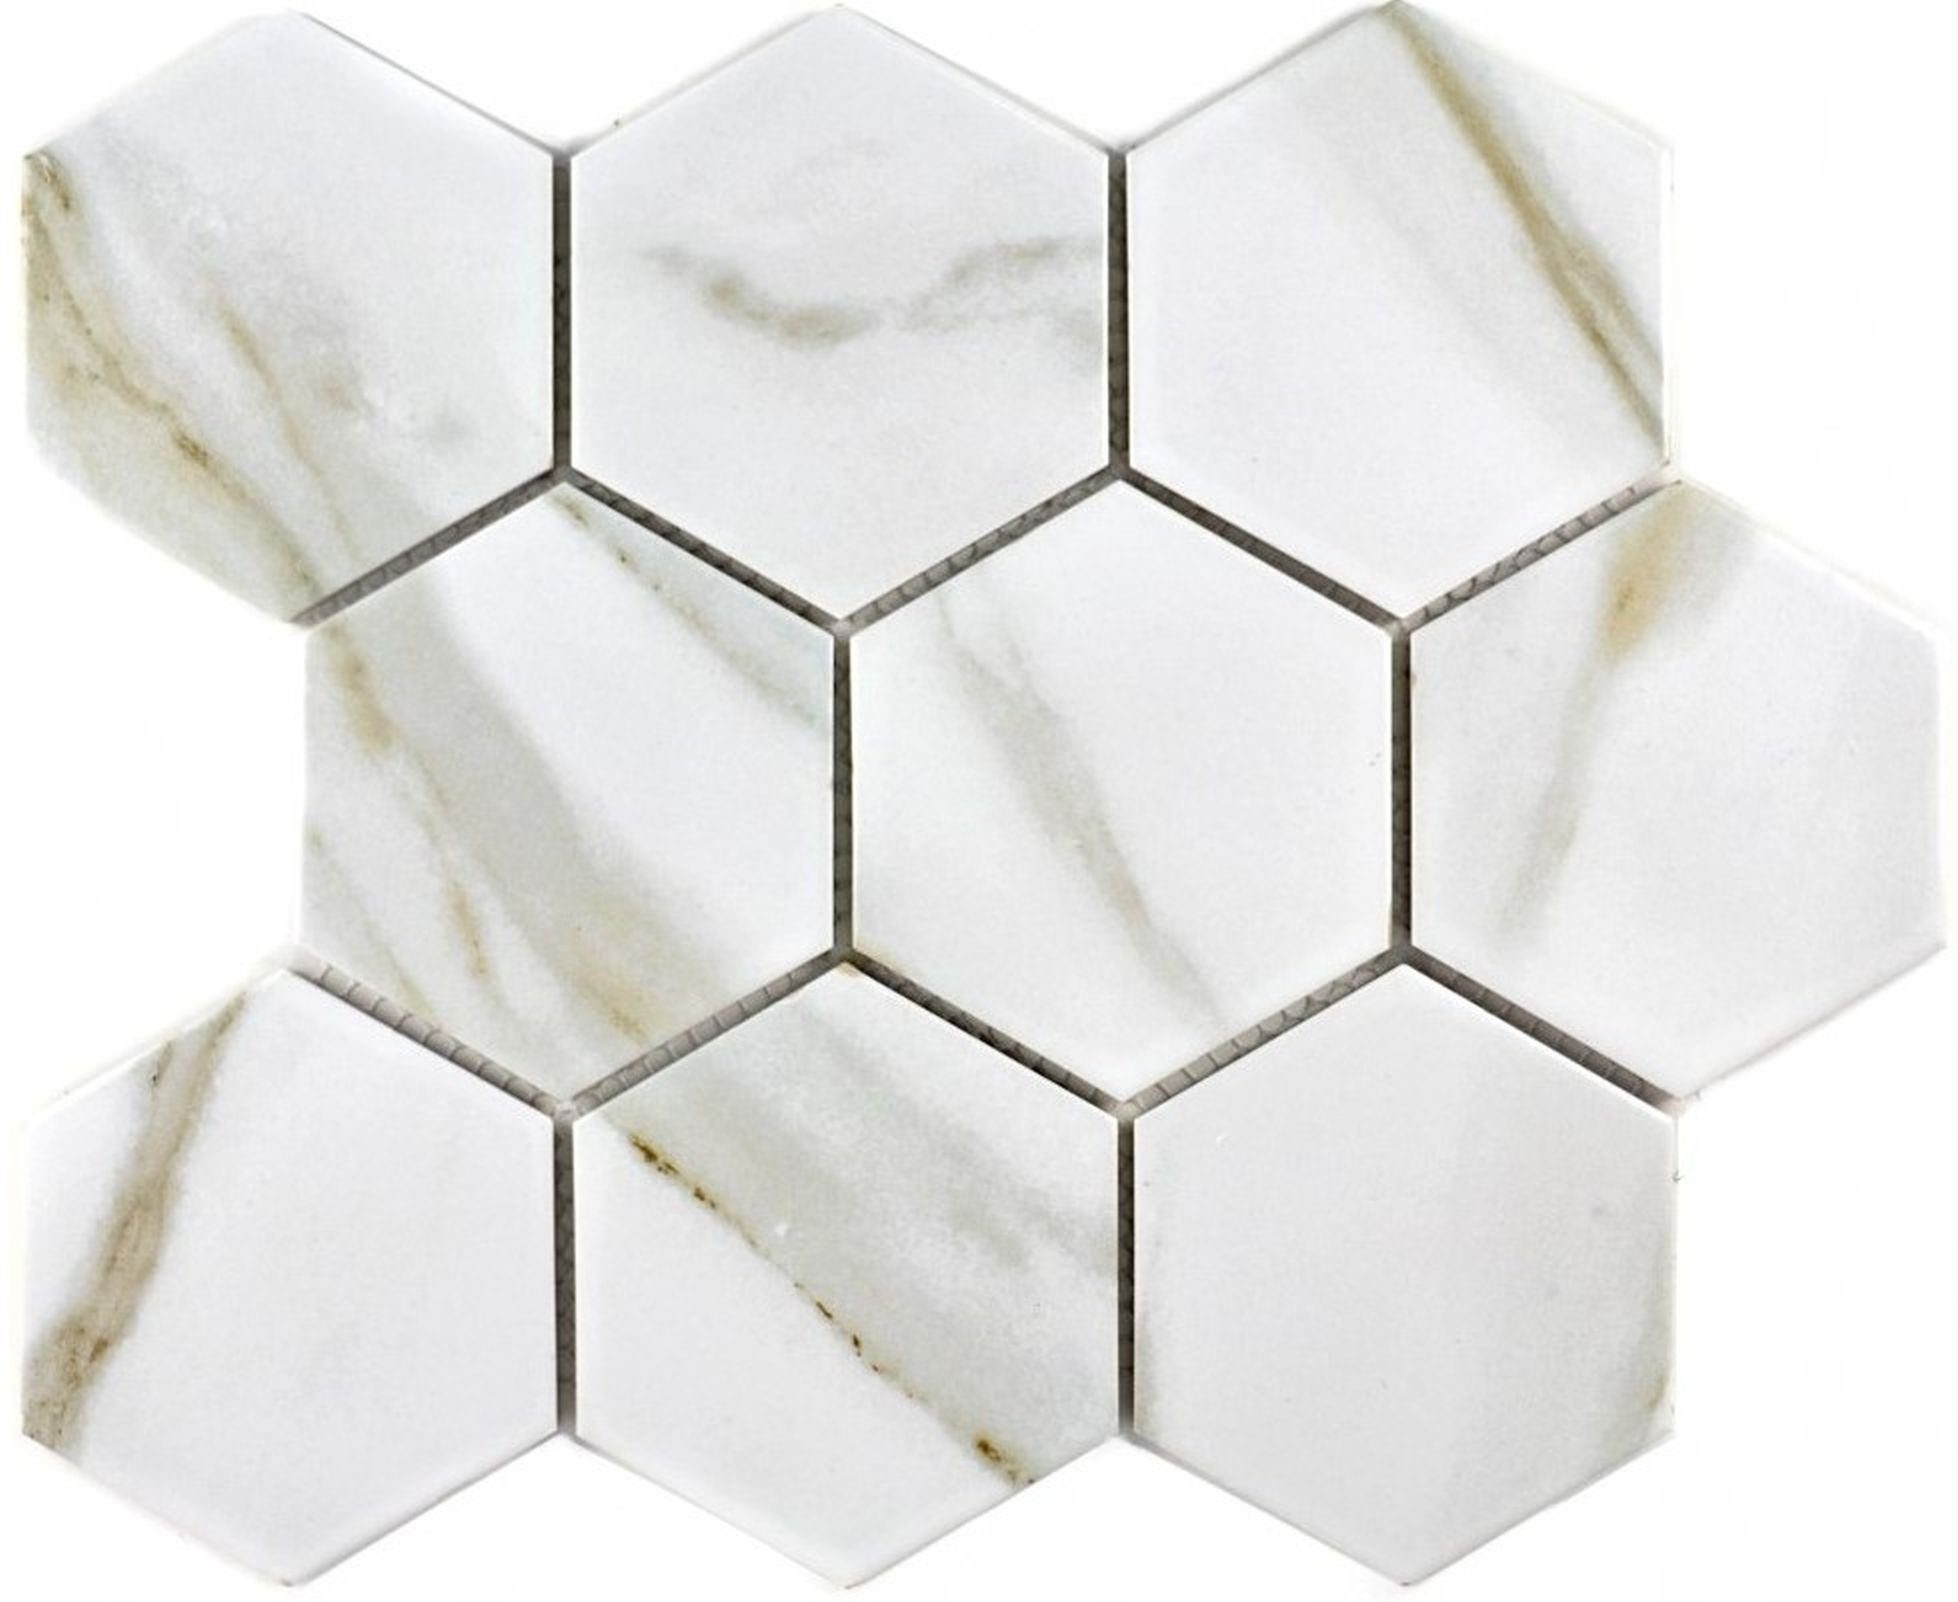 Mosani Mosaikfliesen Hexagonale Wand Calacatta Sechseck weiß grau Keramik Fliese Mosaik